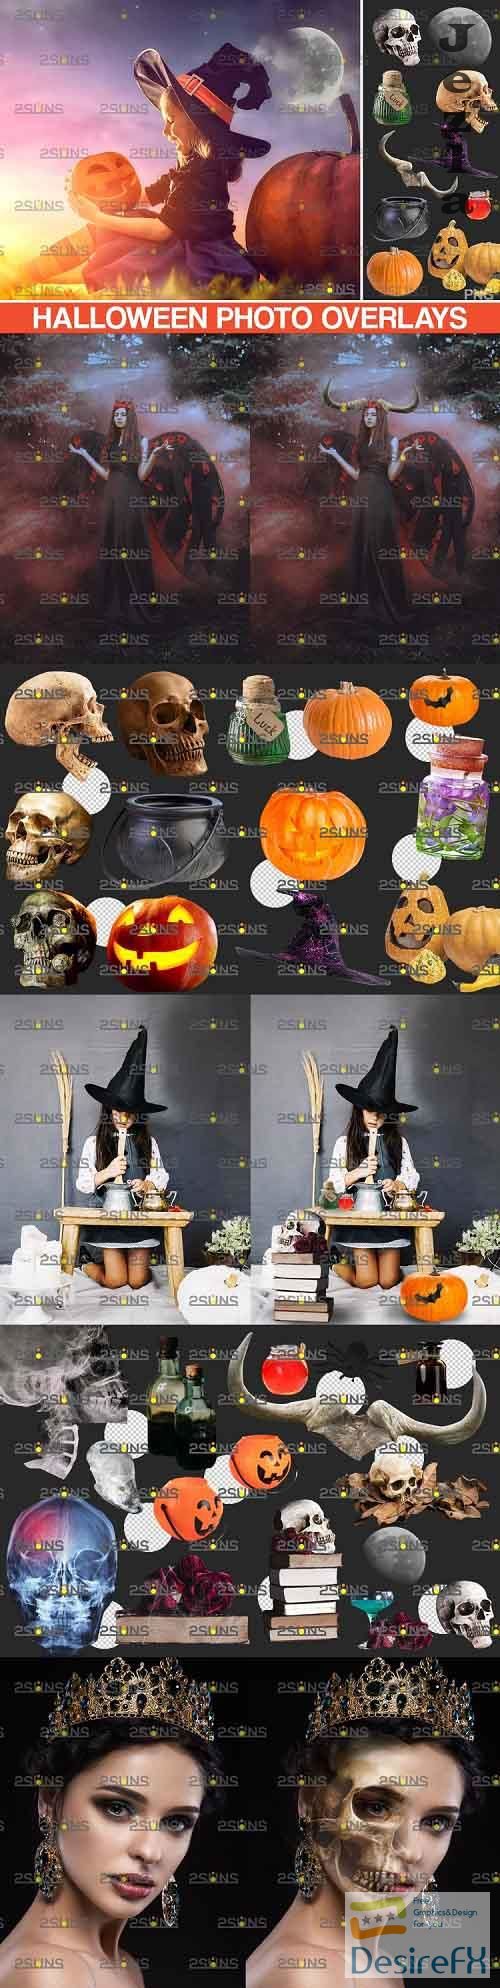 Halloween clipart & Photoshop overlay Halloween overlay - 801237